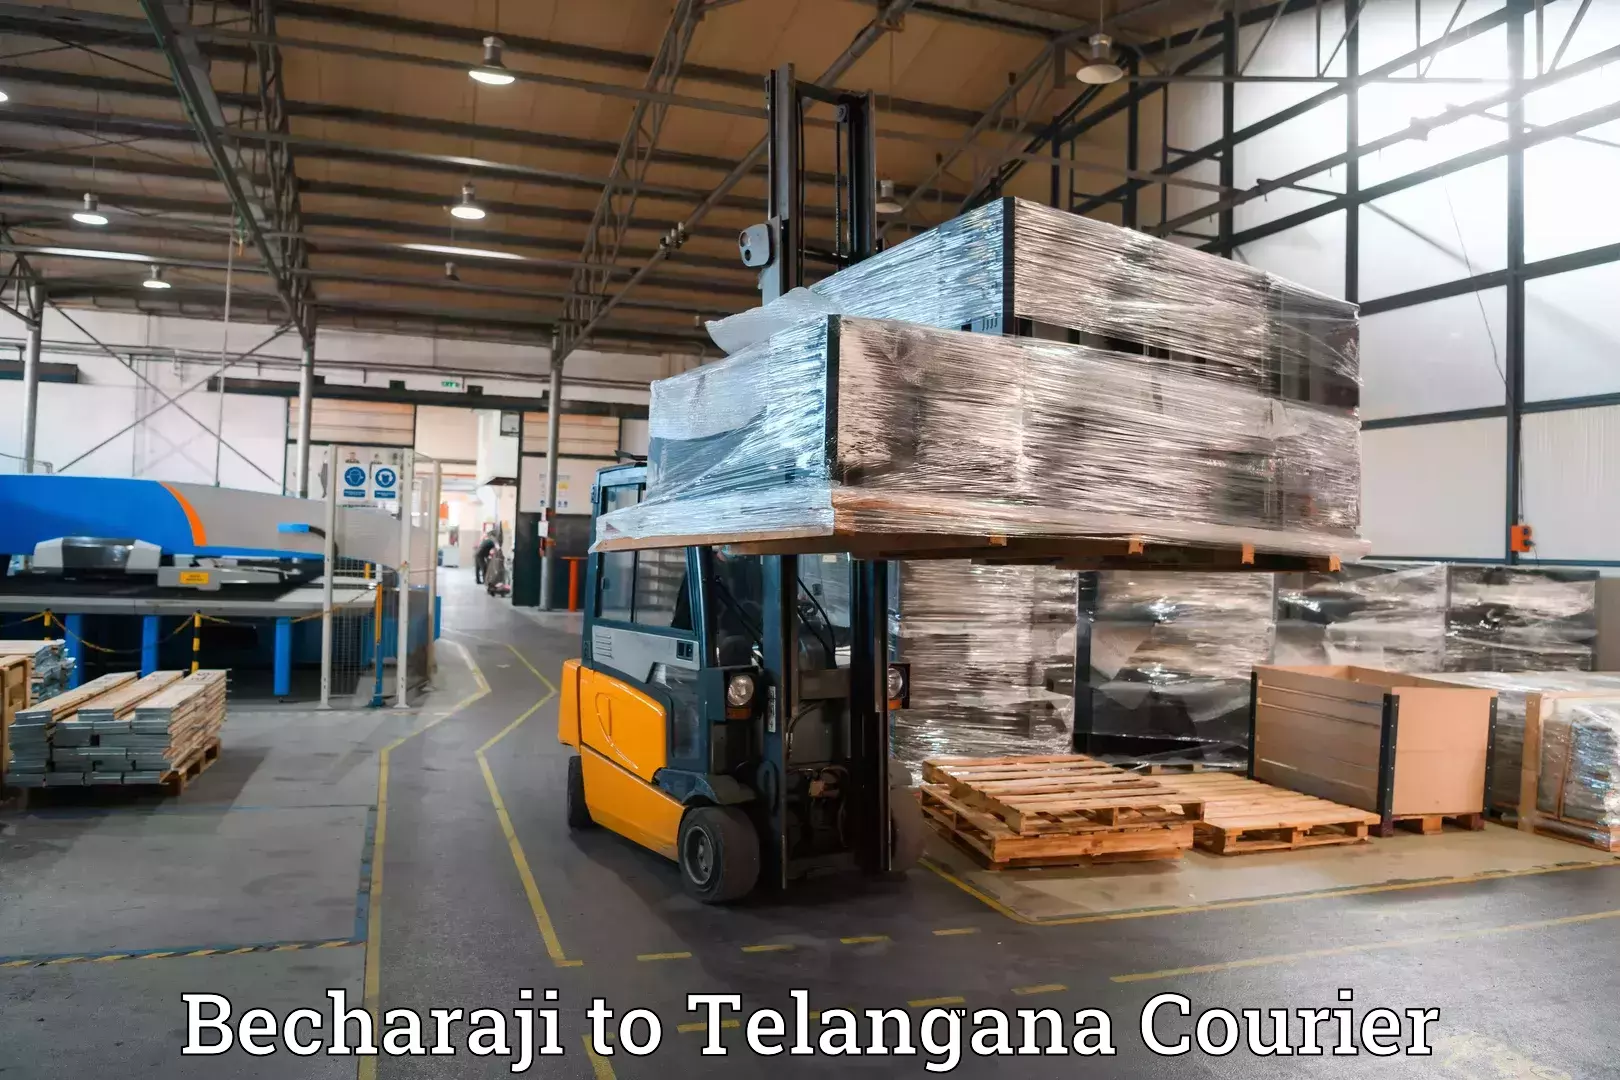 Luggage delivery providers Becharaji to IIT Hyderabad